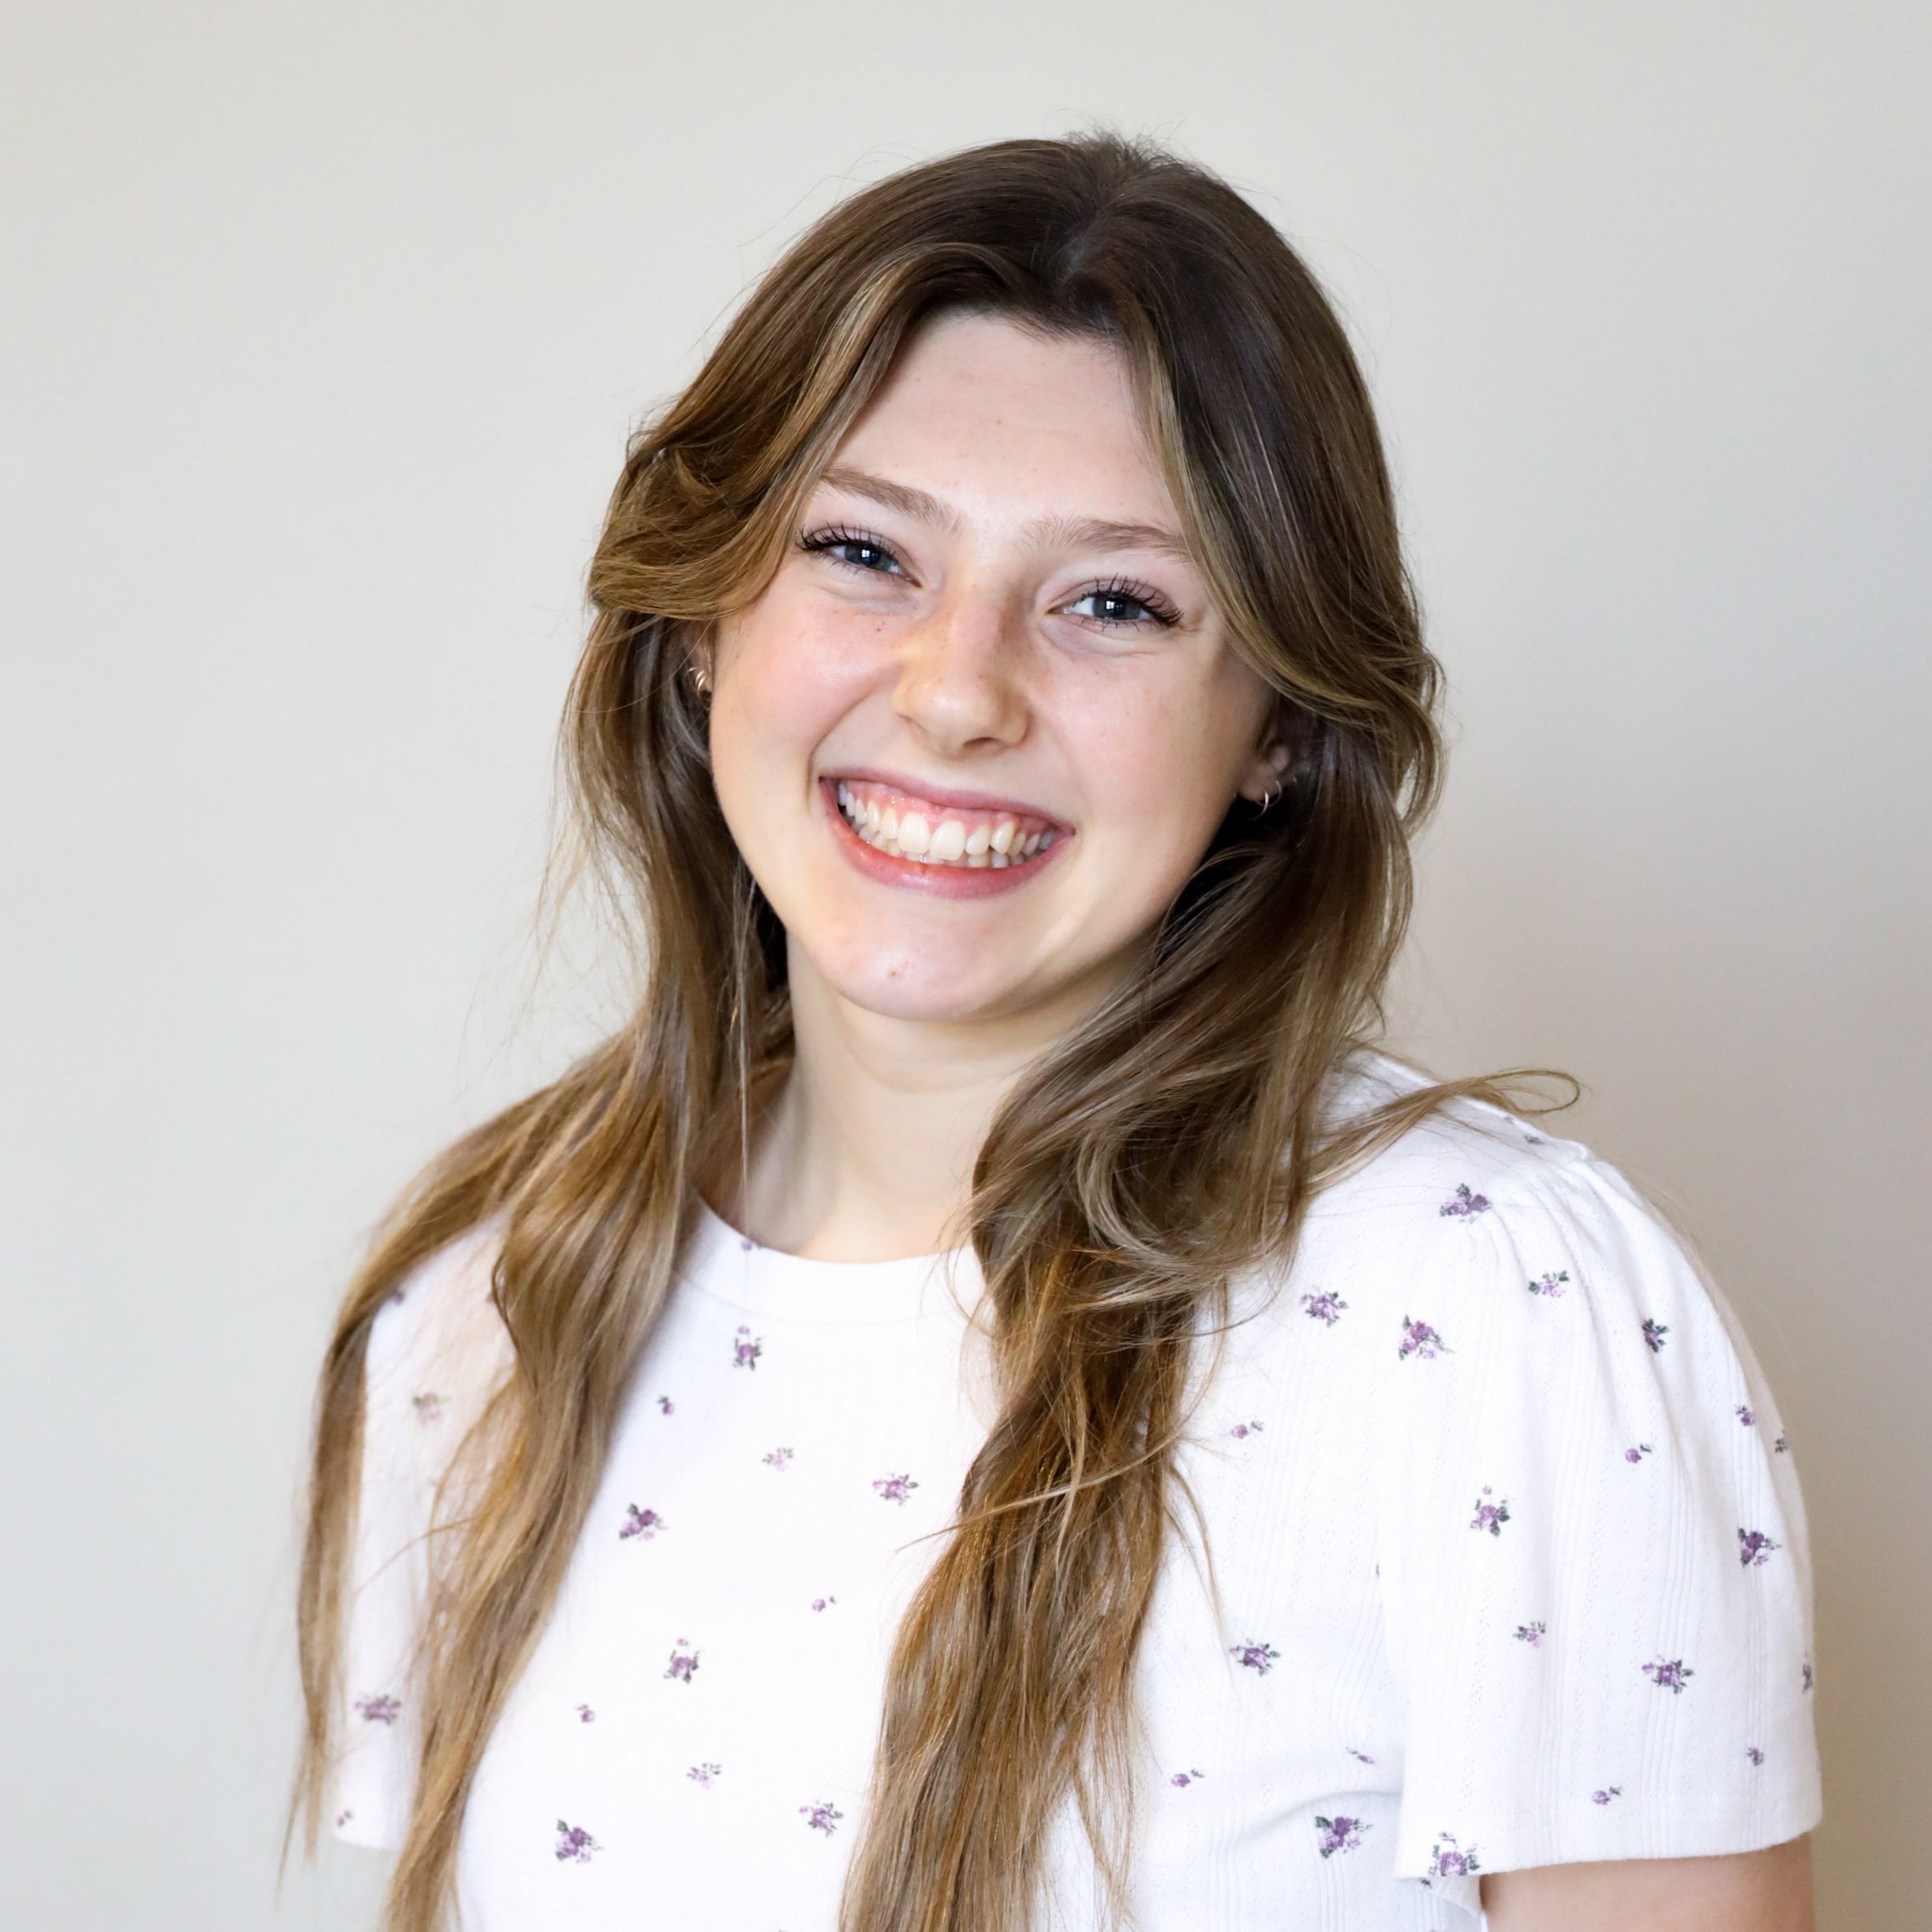 Abigail Skramstad | Media Assistant